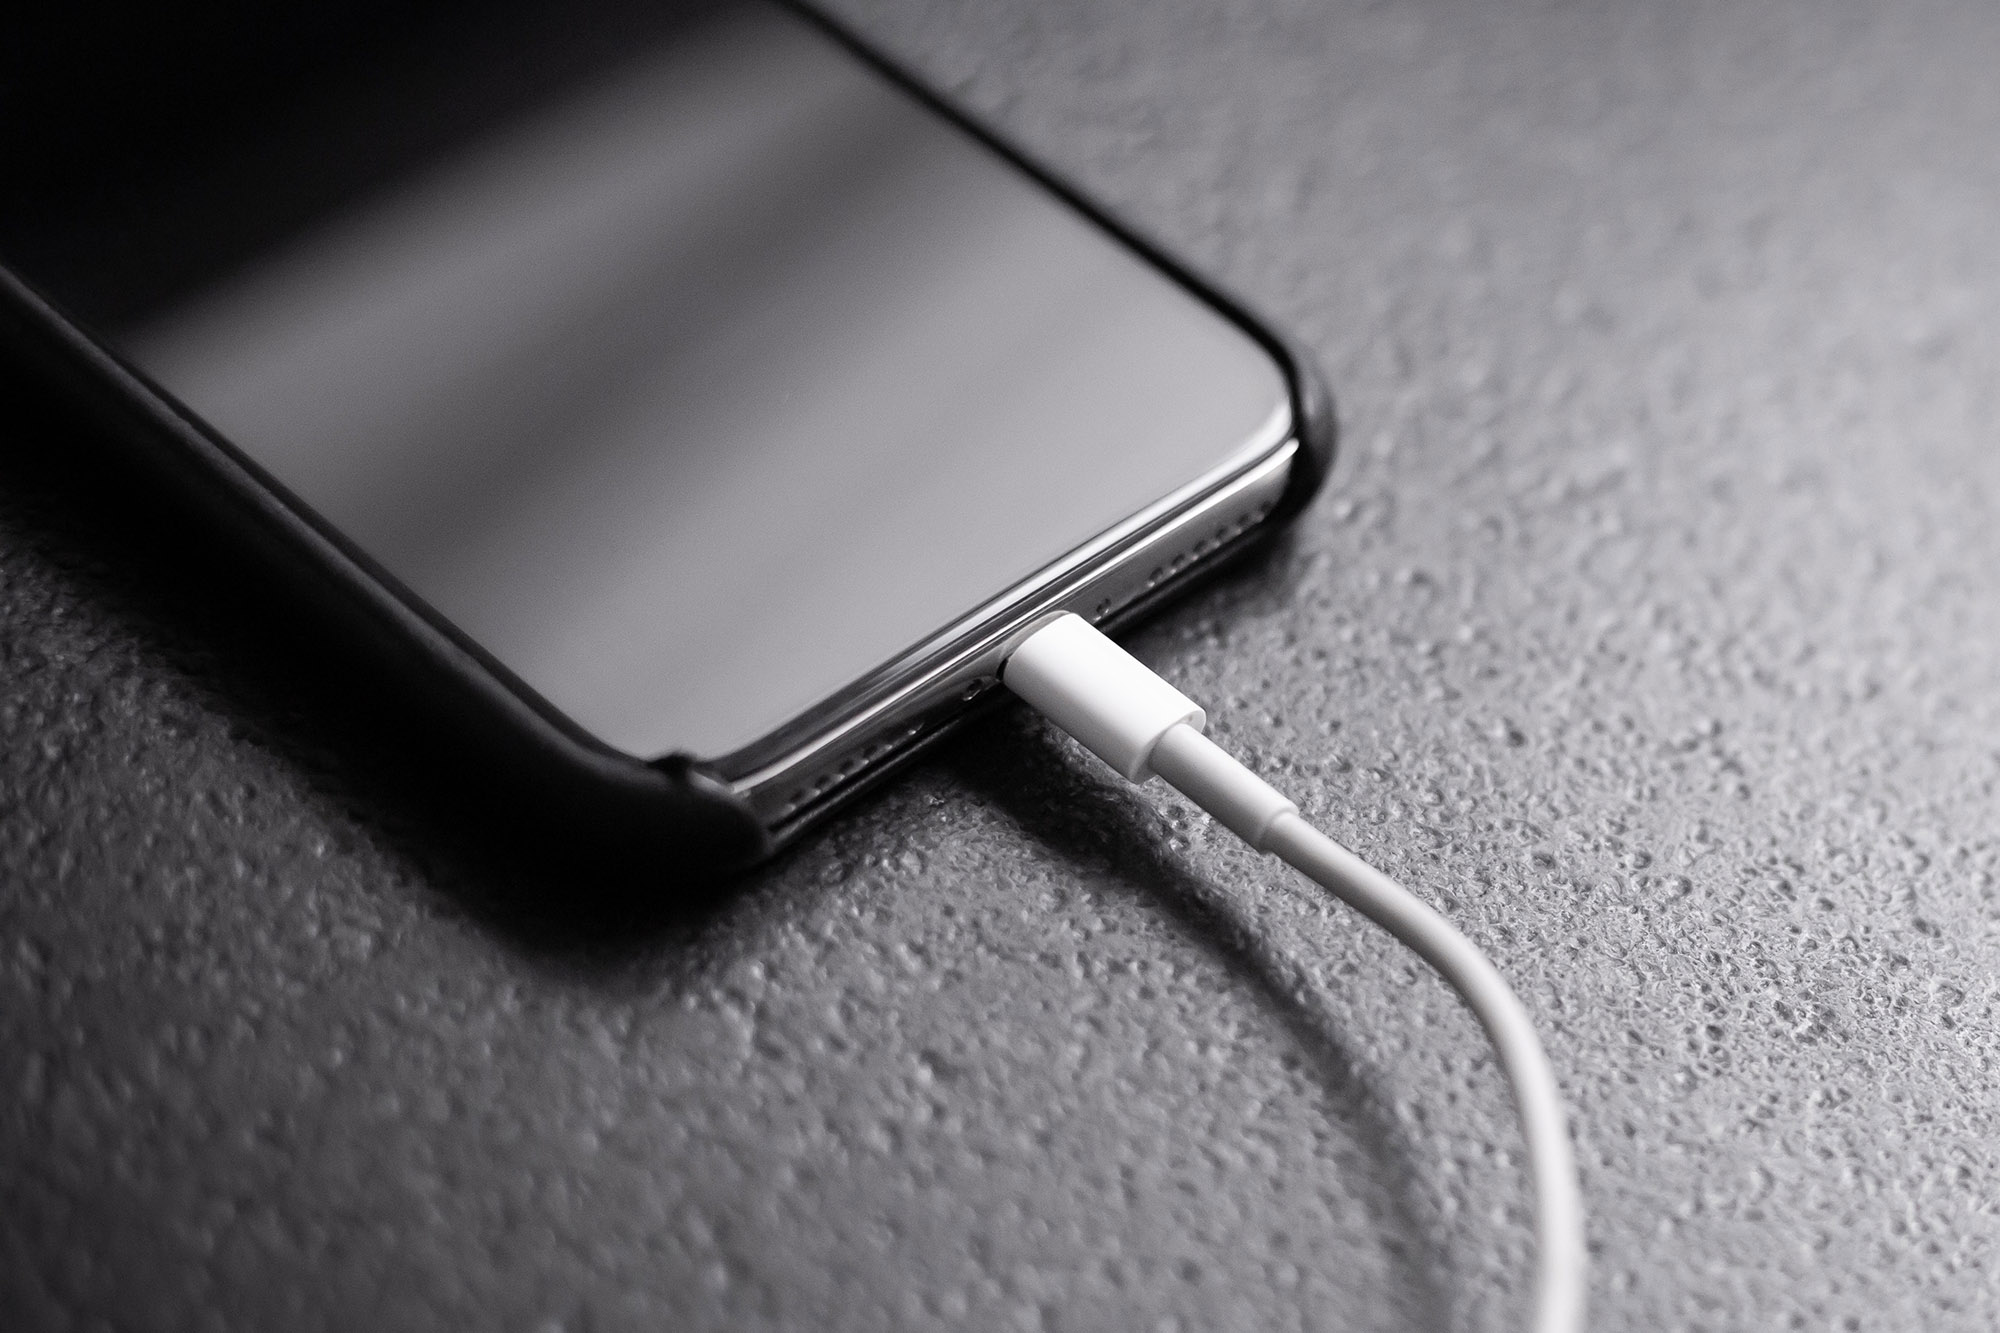 iPhone 15 tendrá puerto USB-C, pero Apple te 'obligará' a comprar